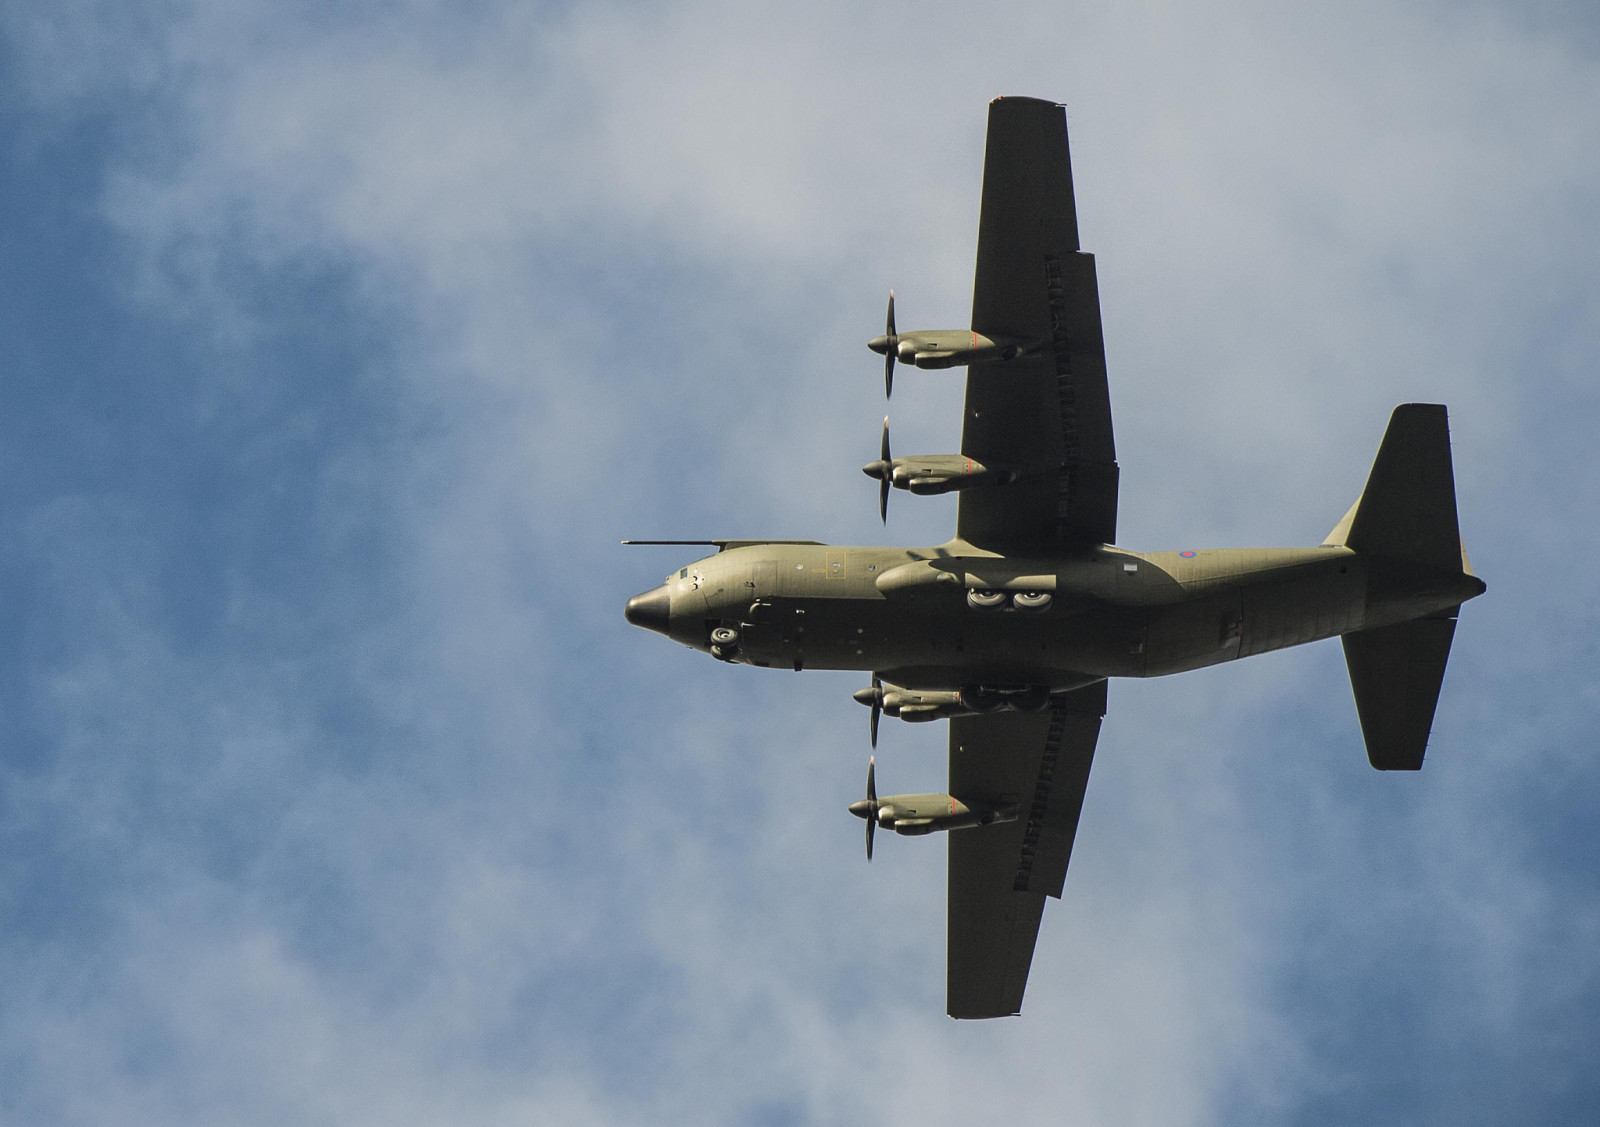 เครื่องบิน, การขนส่งทางทหาร, ล็อคฮีดมาร์ติน, Super Hercules, C-130J